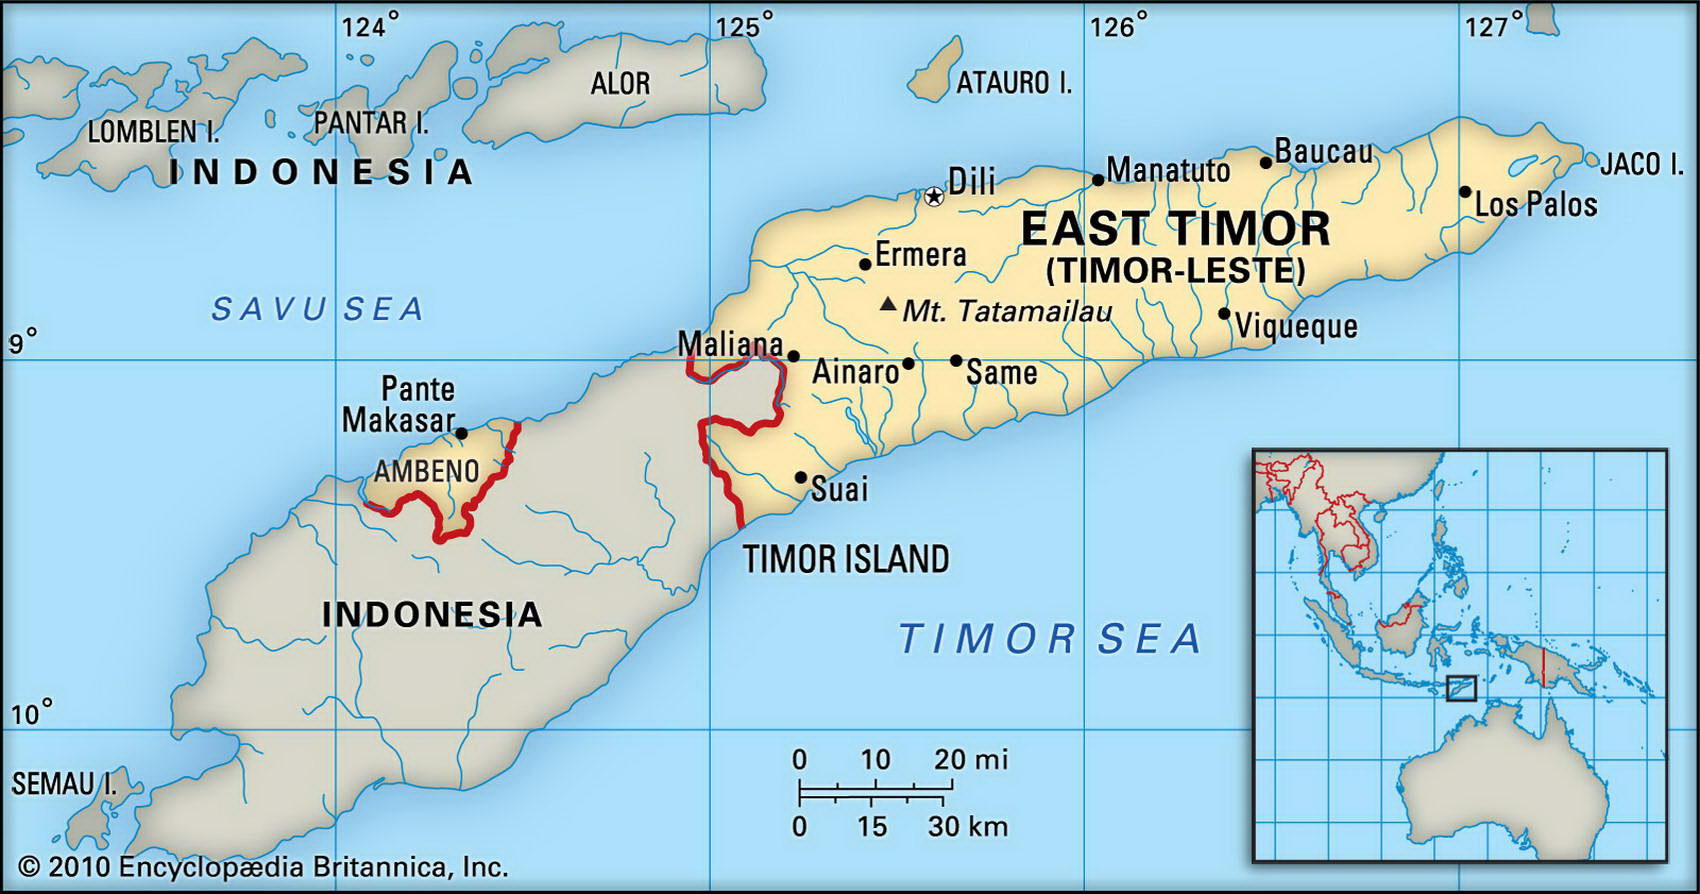 https://map-rus.com/atlas/images/East-Timor.jpg